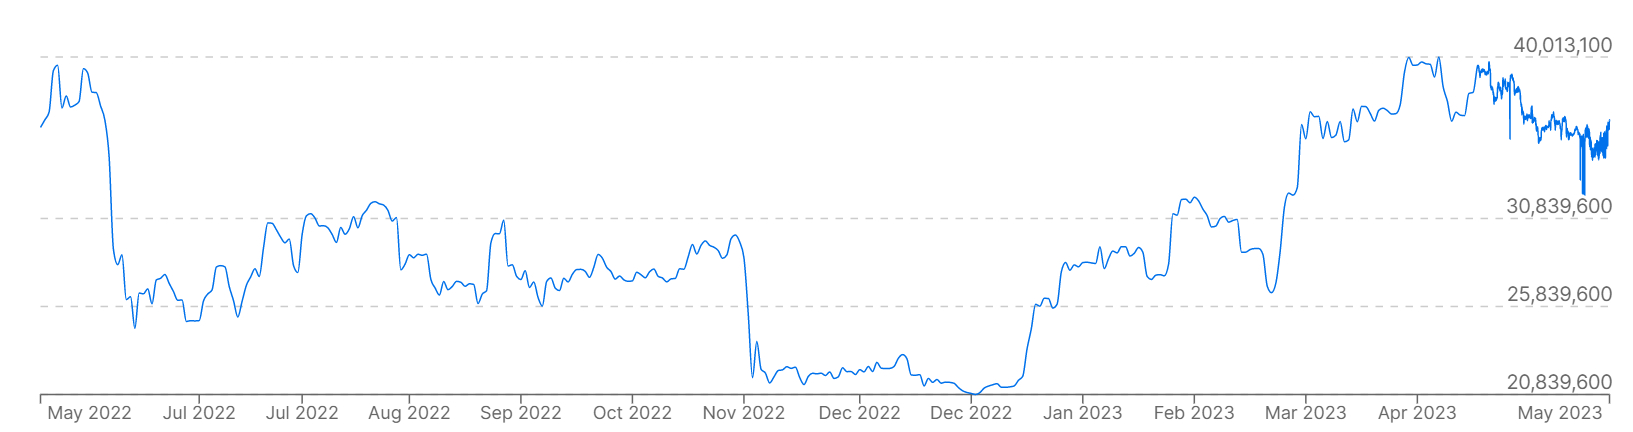 Son 12 ayda Güney Kore Wonu karşısında Bitcoin (BTC) fiyatlarını gösteren bir grafik.